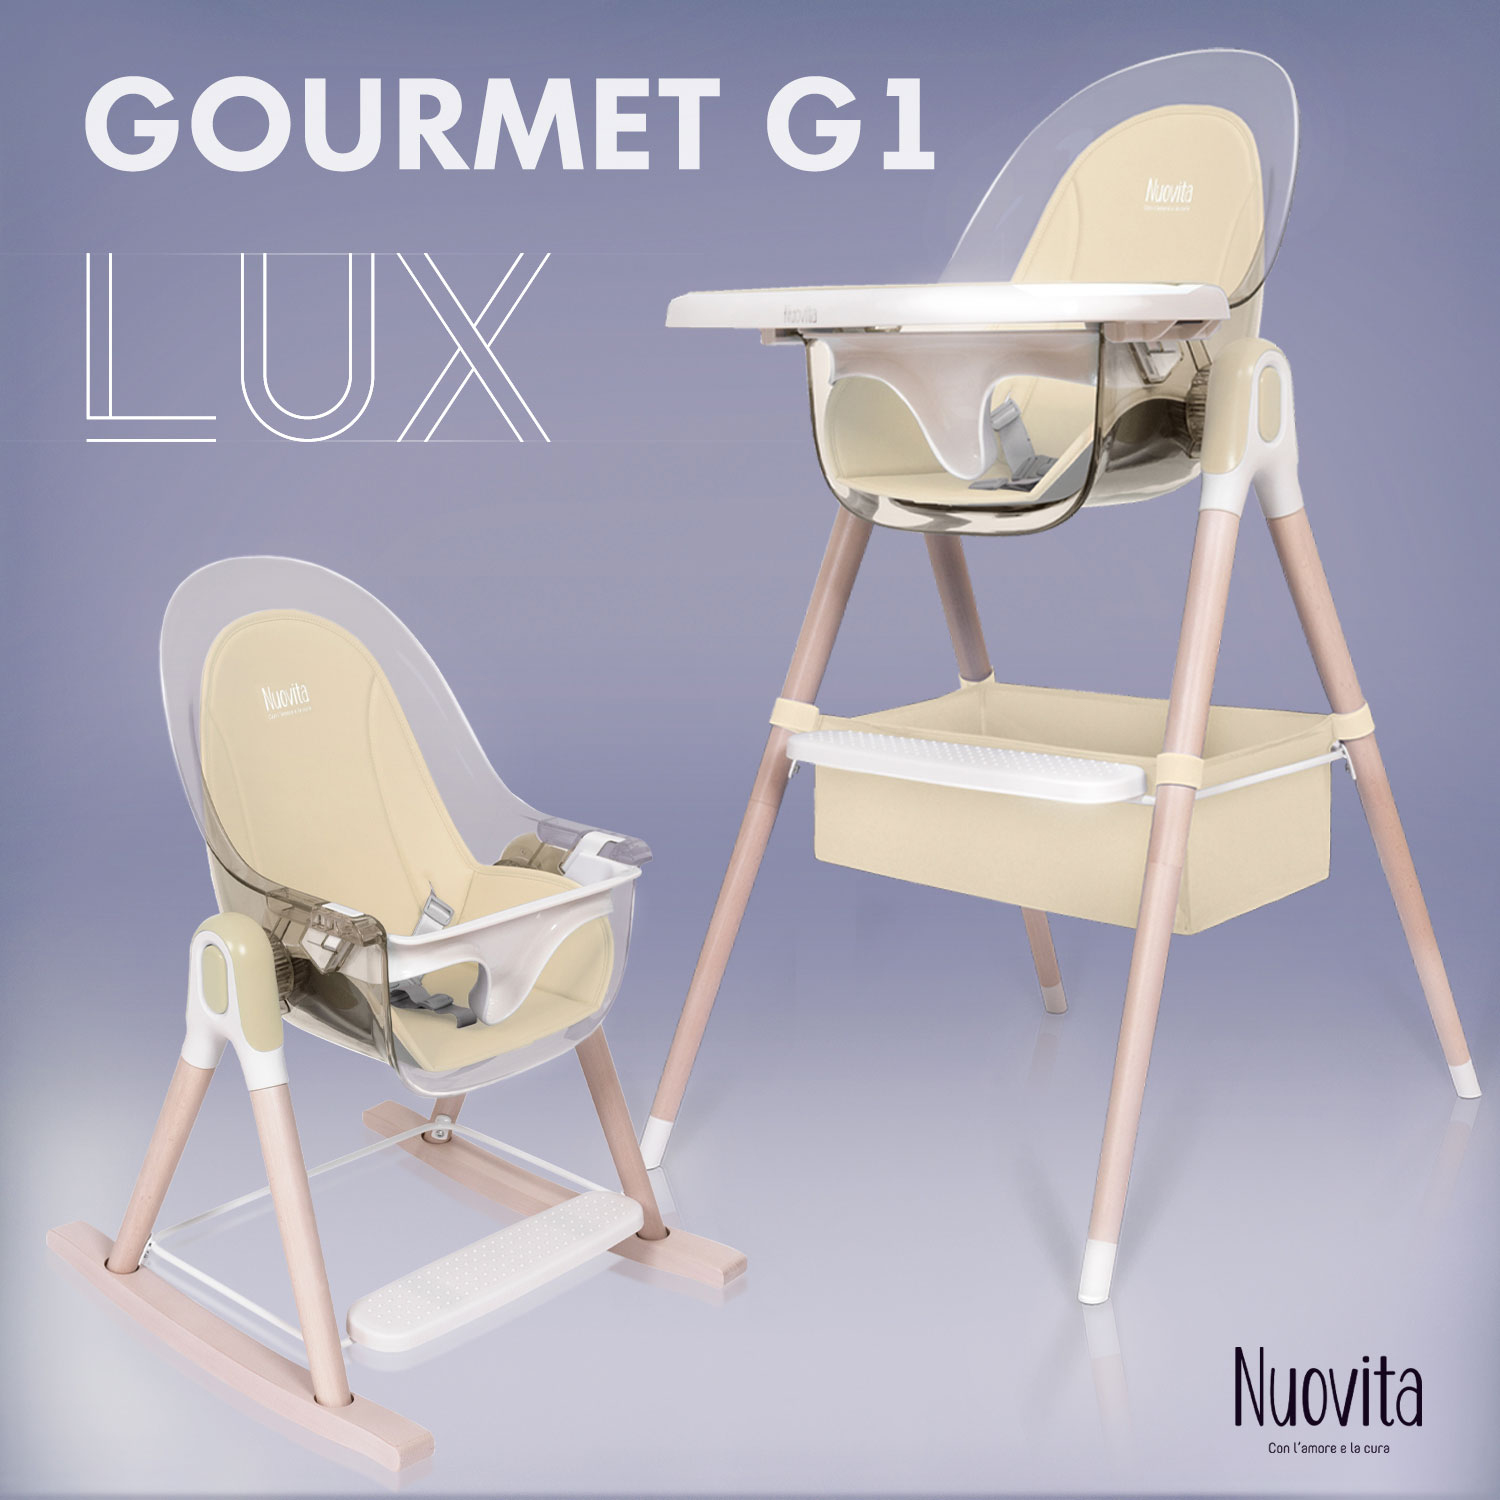 Стульчик для кормления 3 в 1 Nuovita Gourmet G1 Lux (Beige/Бежевый) стульчик для кормления nuovita gourmet g1 lux 3 в 1